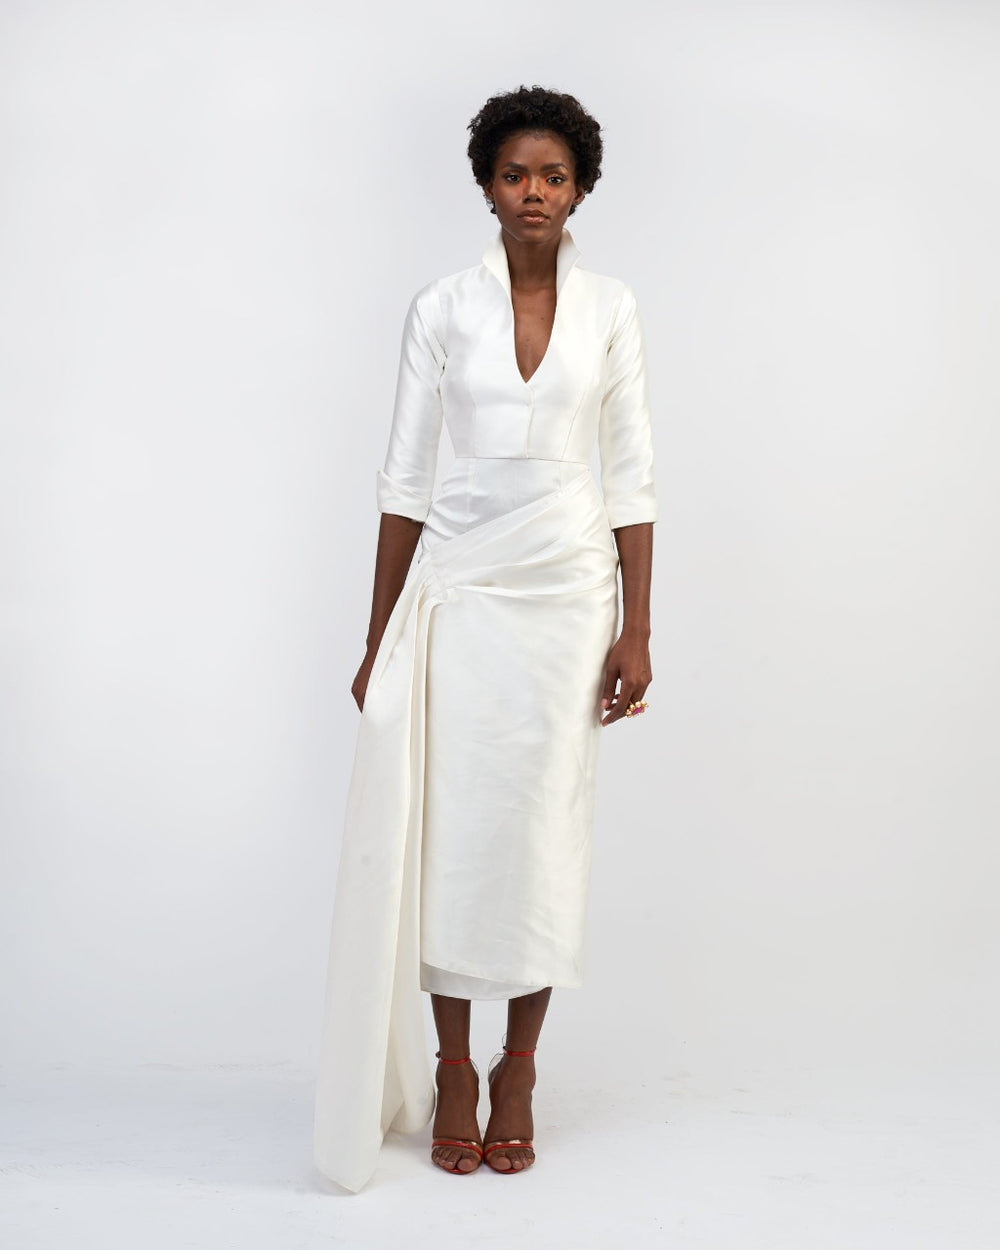 A model wearing a white silk satin dress